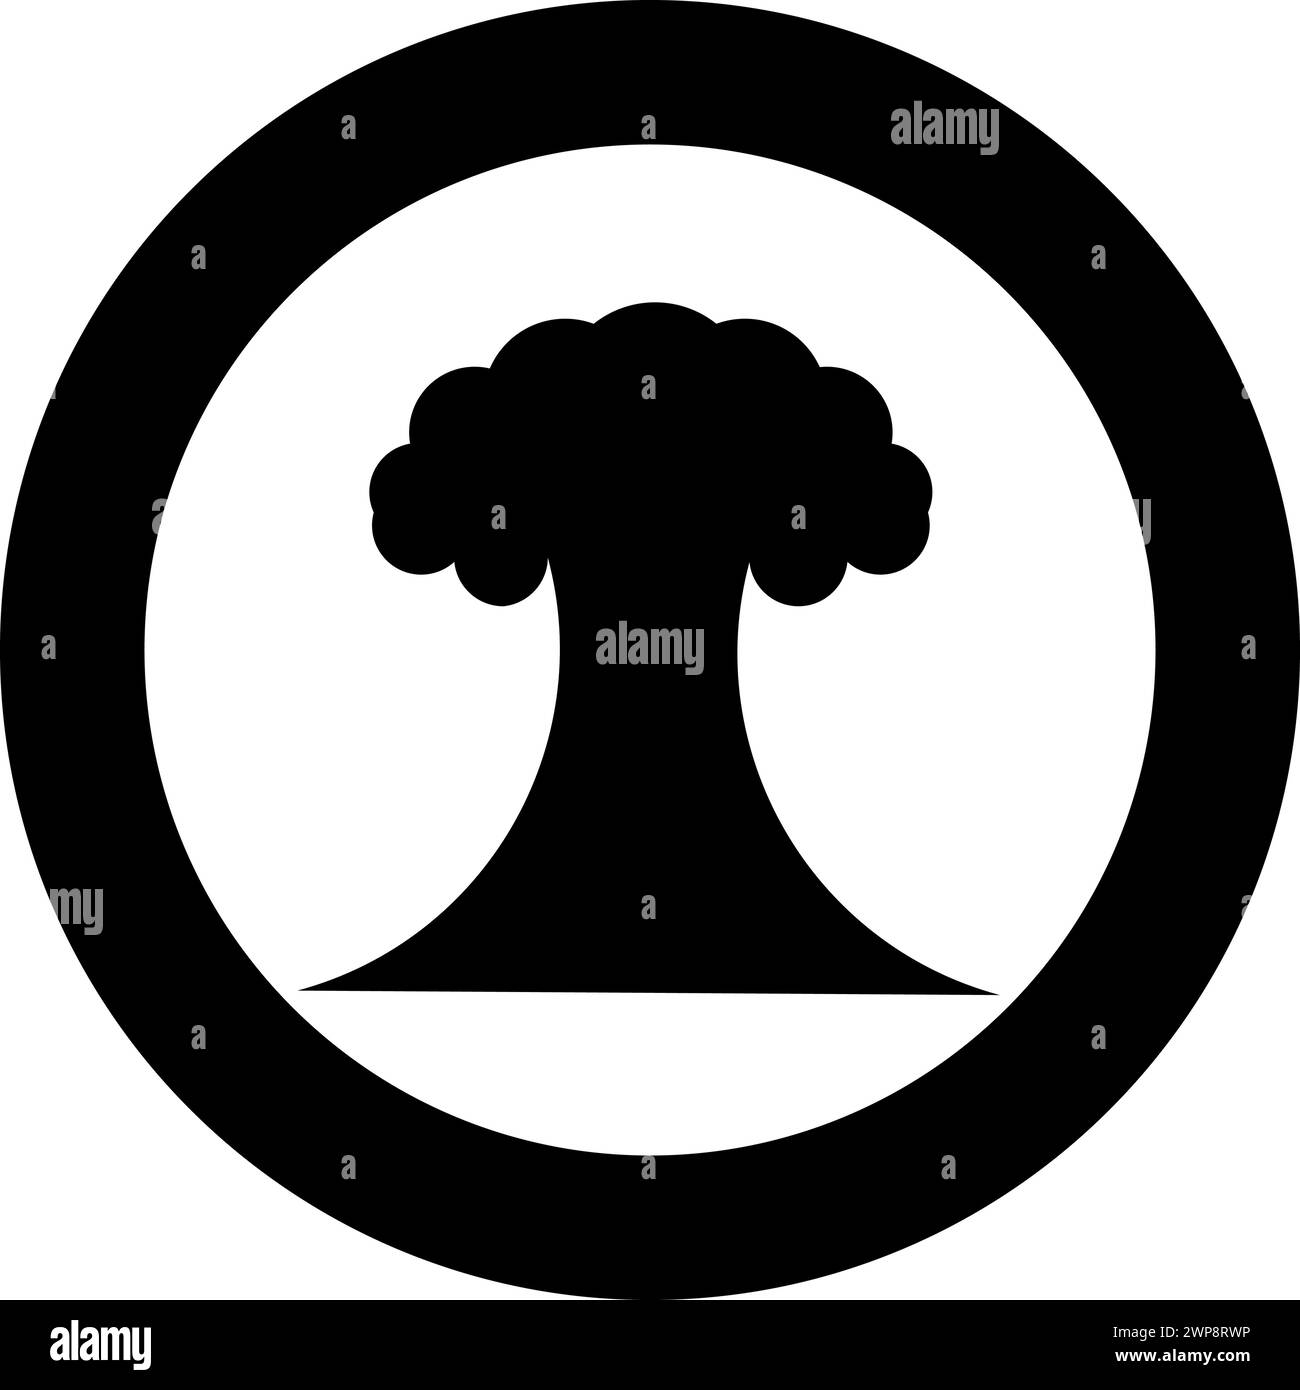 Esplosione nucleare fungo esplosivo distruzione esplosiva icona in cerchio di colore nero vettoriale immagine contorno solido stile semplice Illustrazione Vettoriale